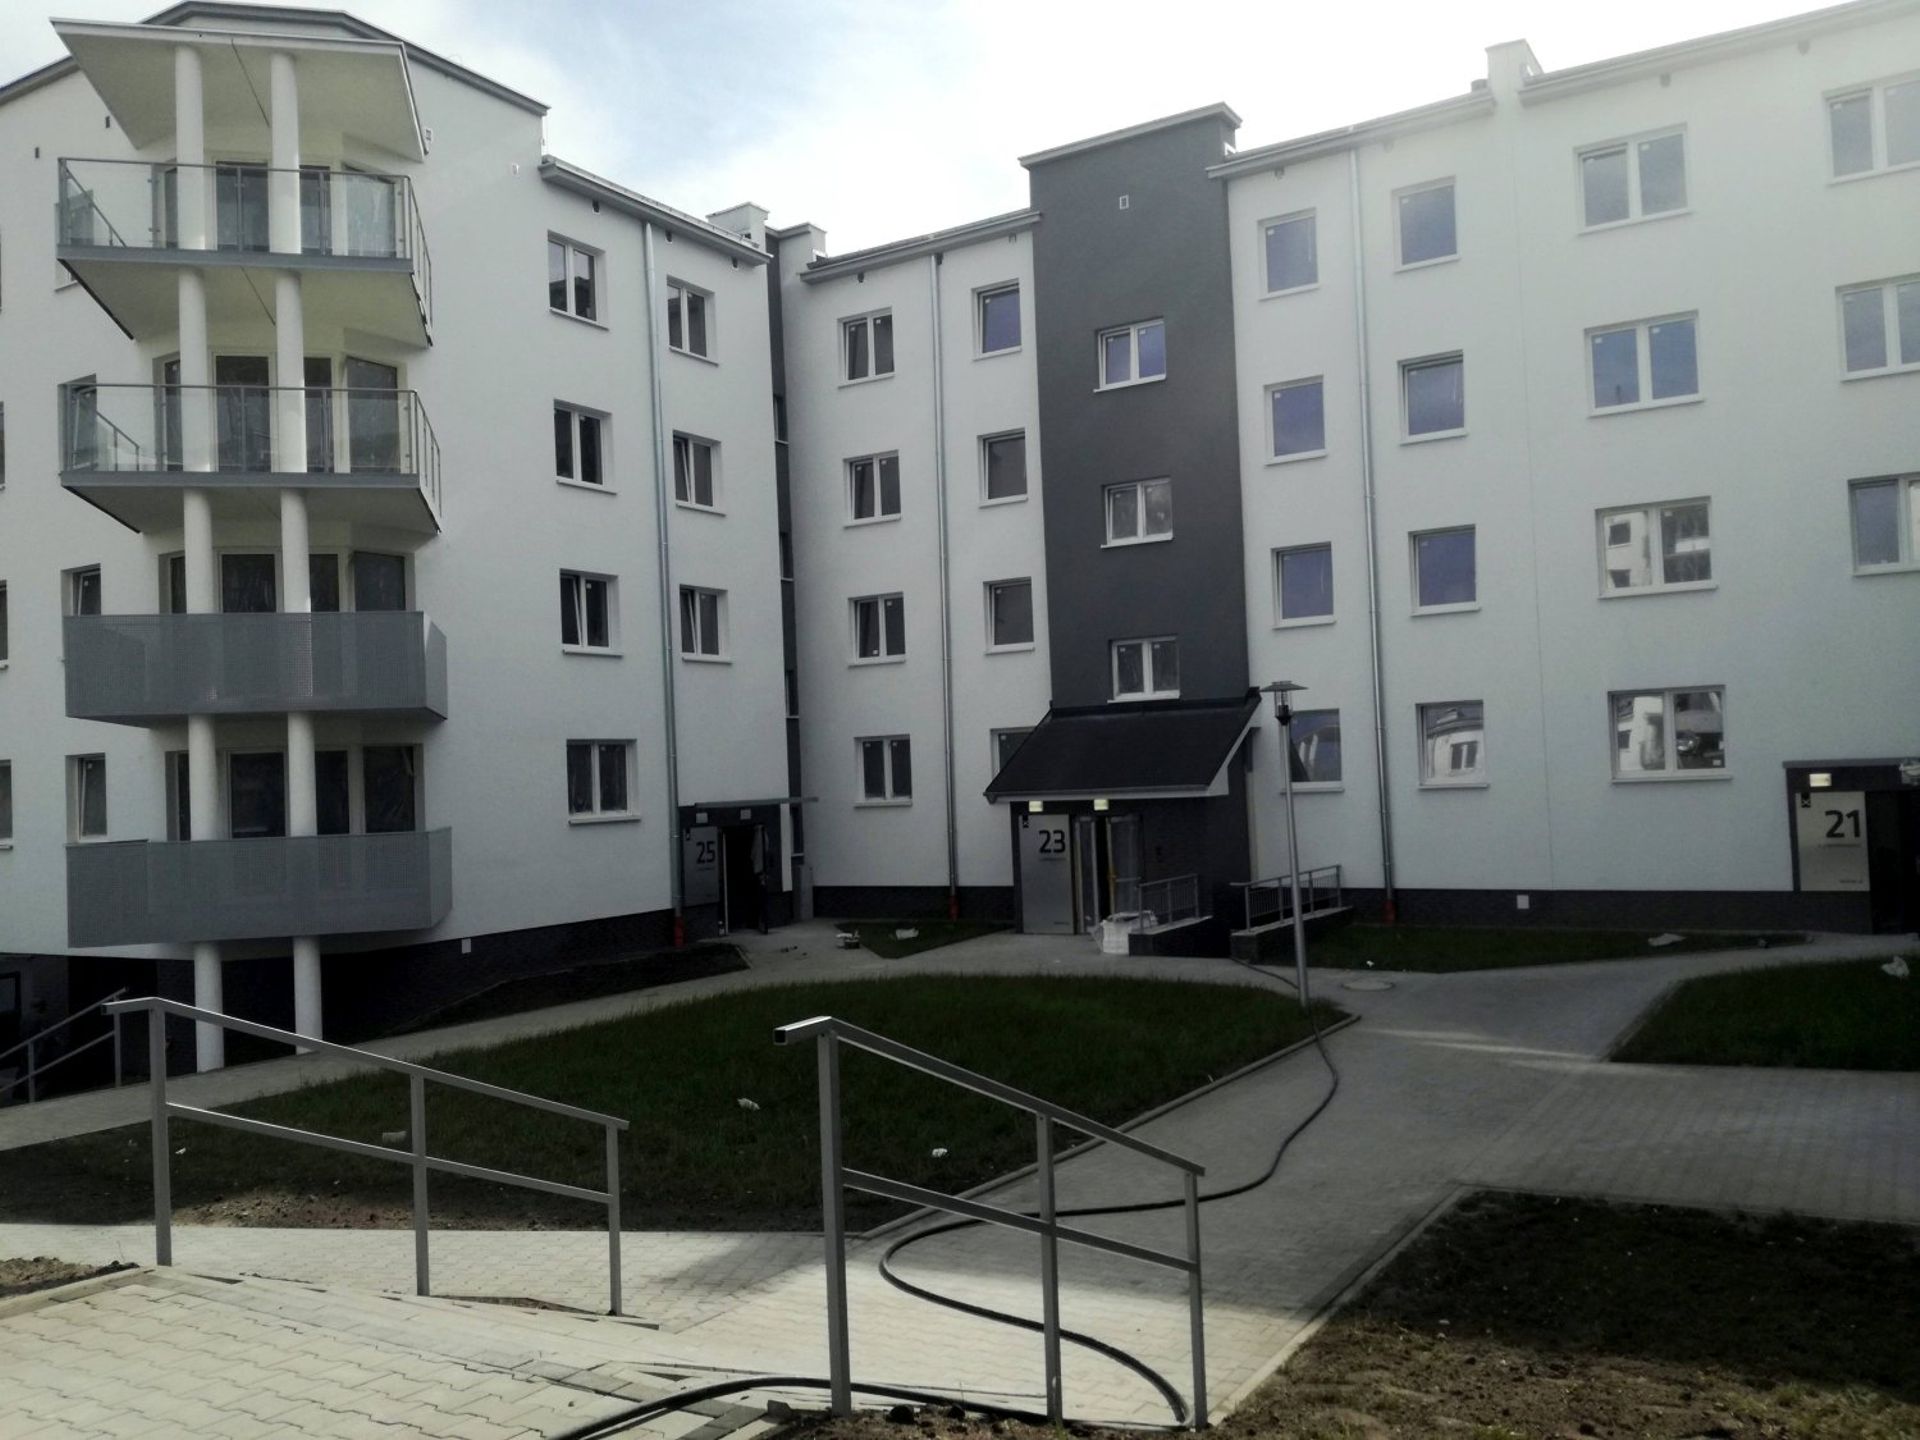  Pierwsze mieszkania osiedla przy Lewandowskiego w Szczecinie przekazane